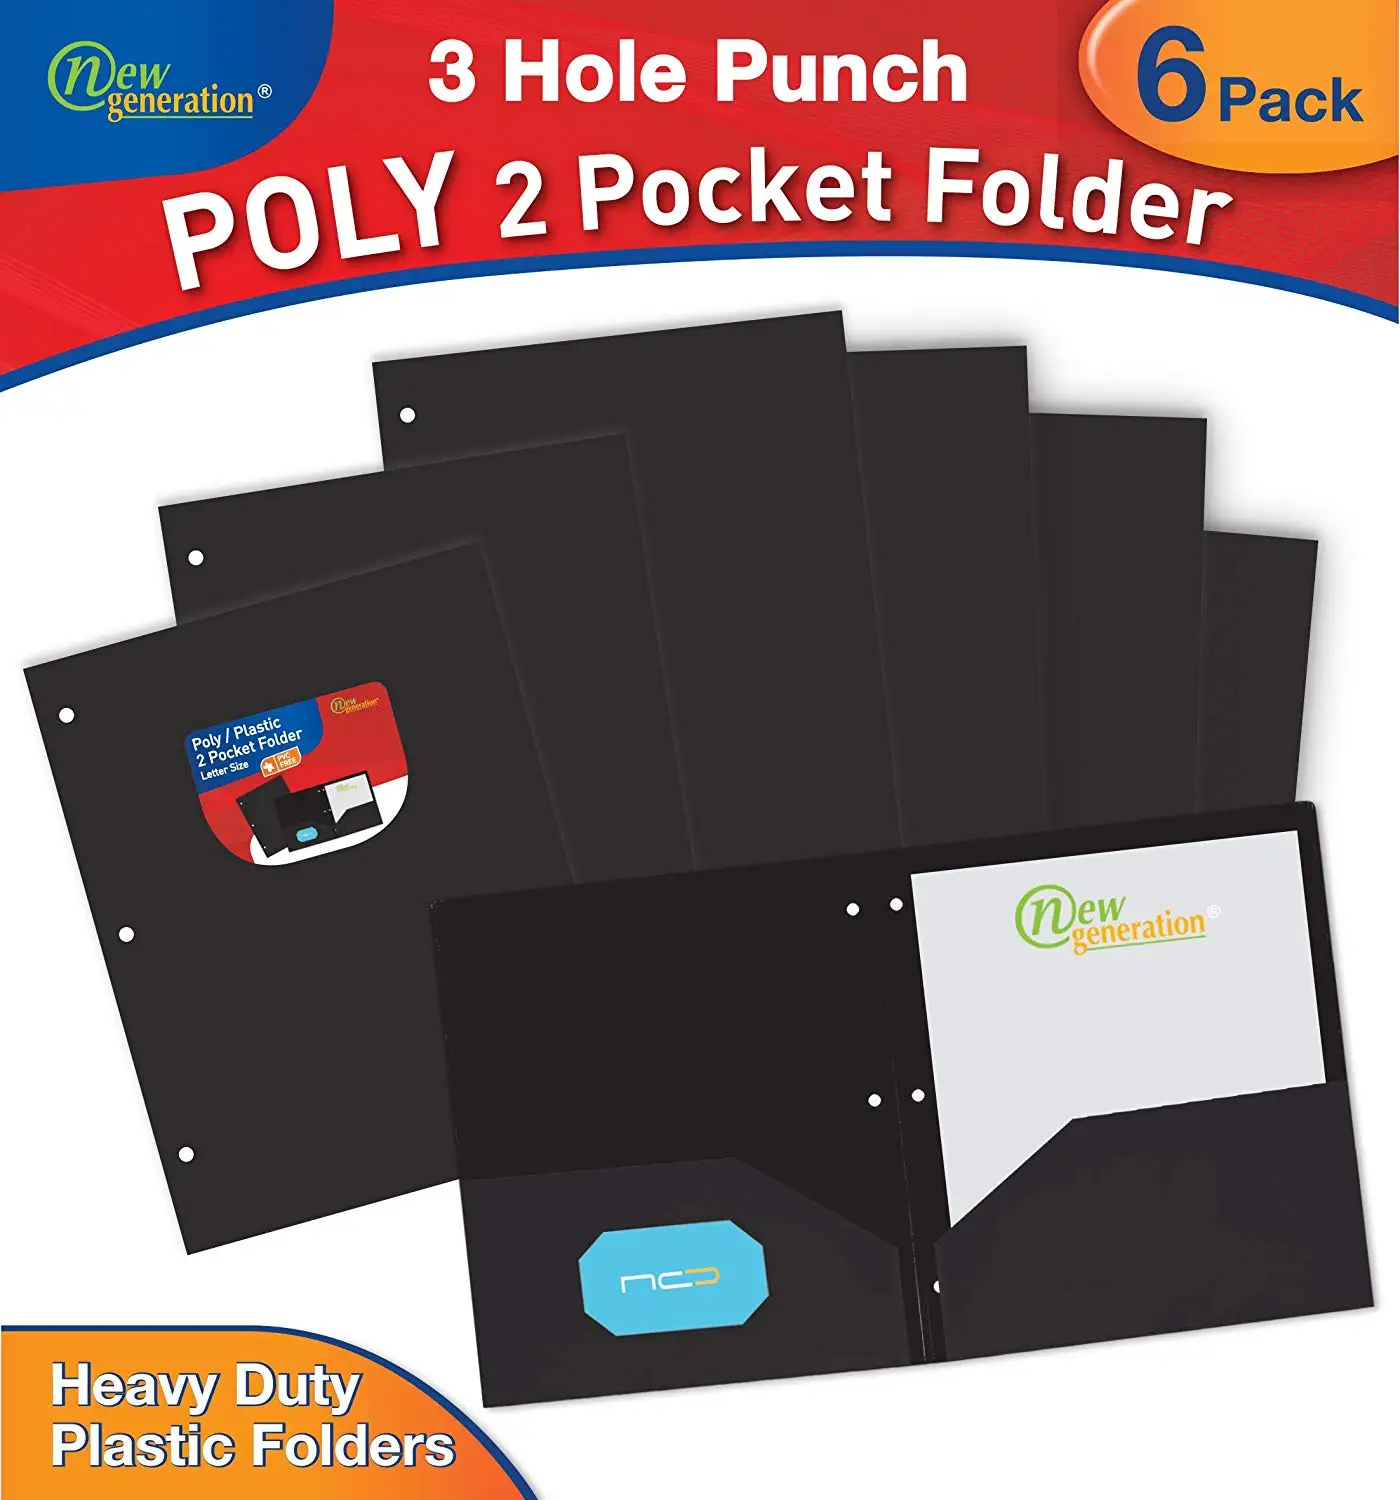 Pack of 6 Basics Heavy Duty Plastic 2 Pocket Folder for Letter Size Paper